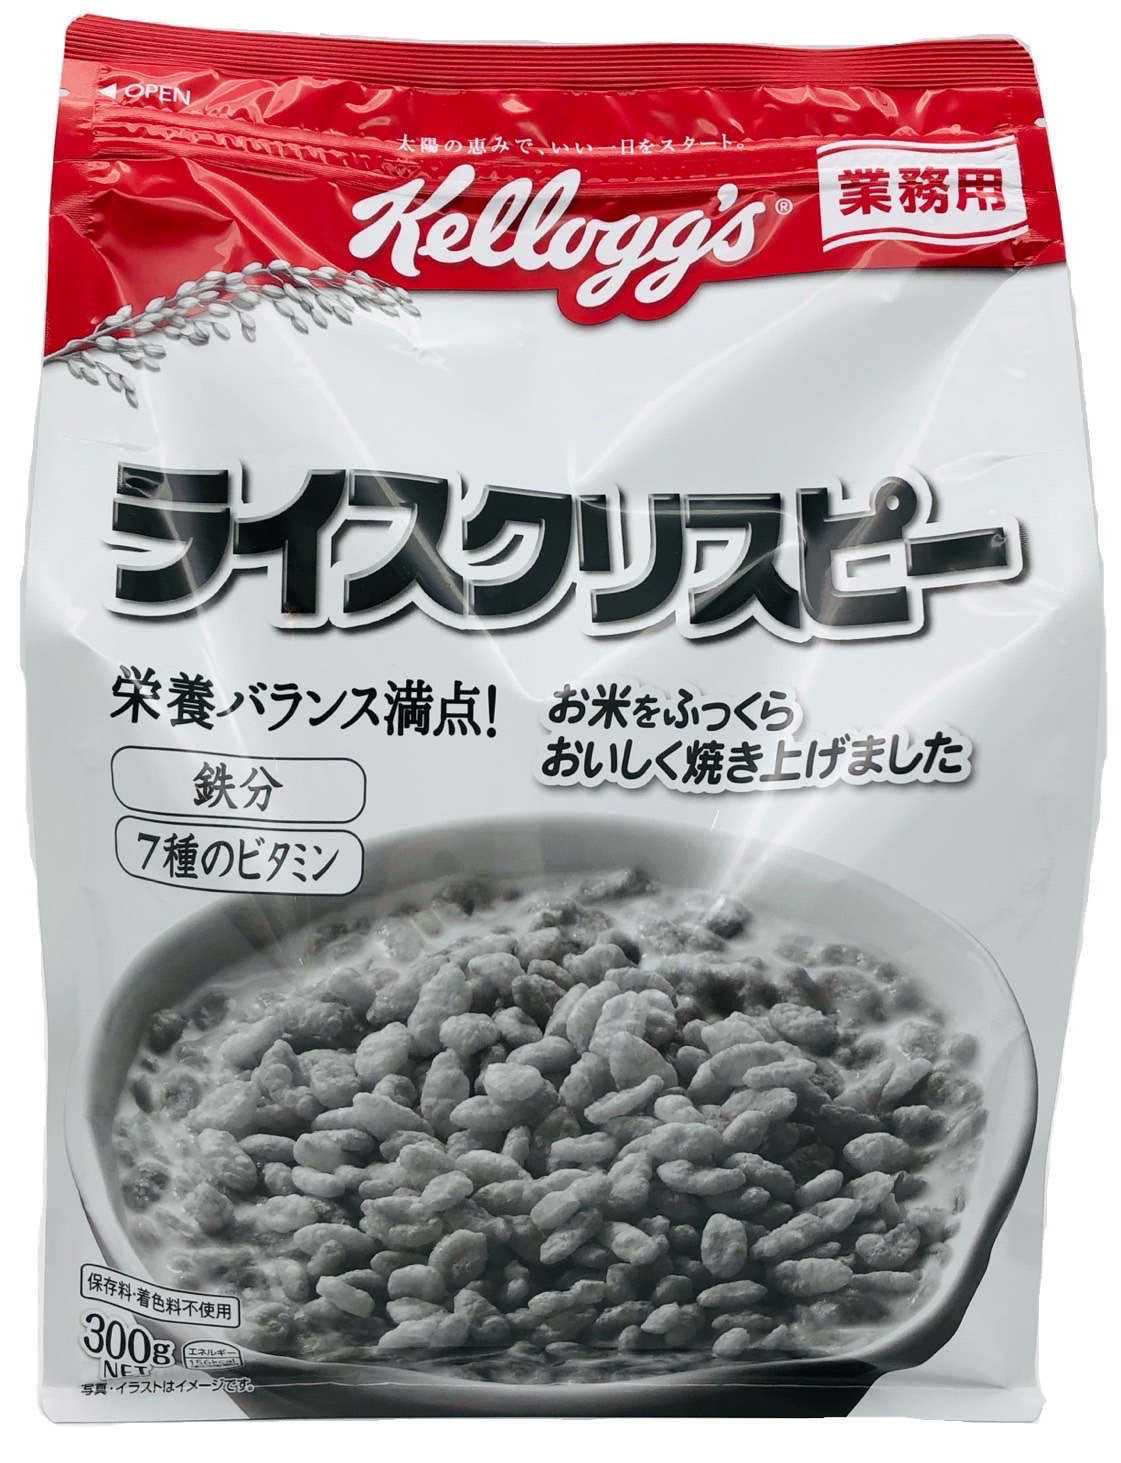 朝食シリアル ケロッグ ライスクリスピー 300g×6袋セット Kellogg